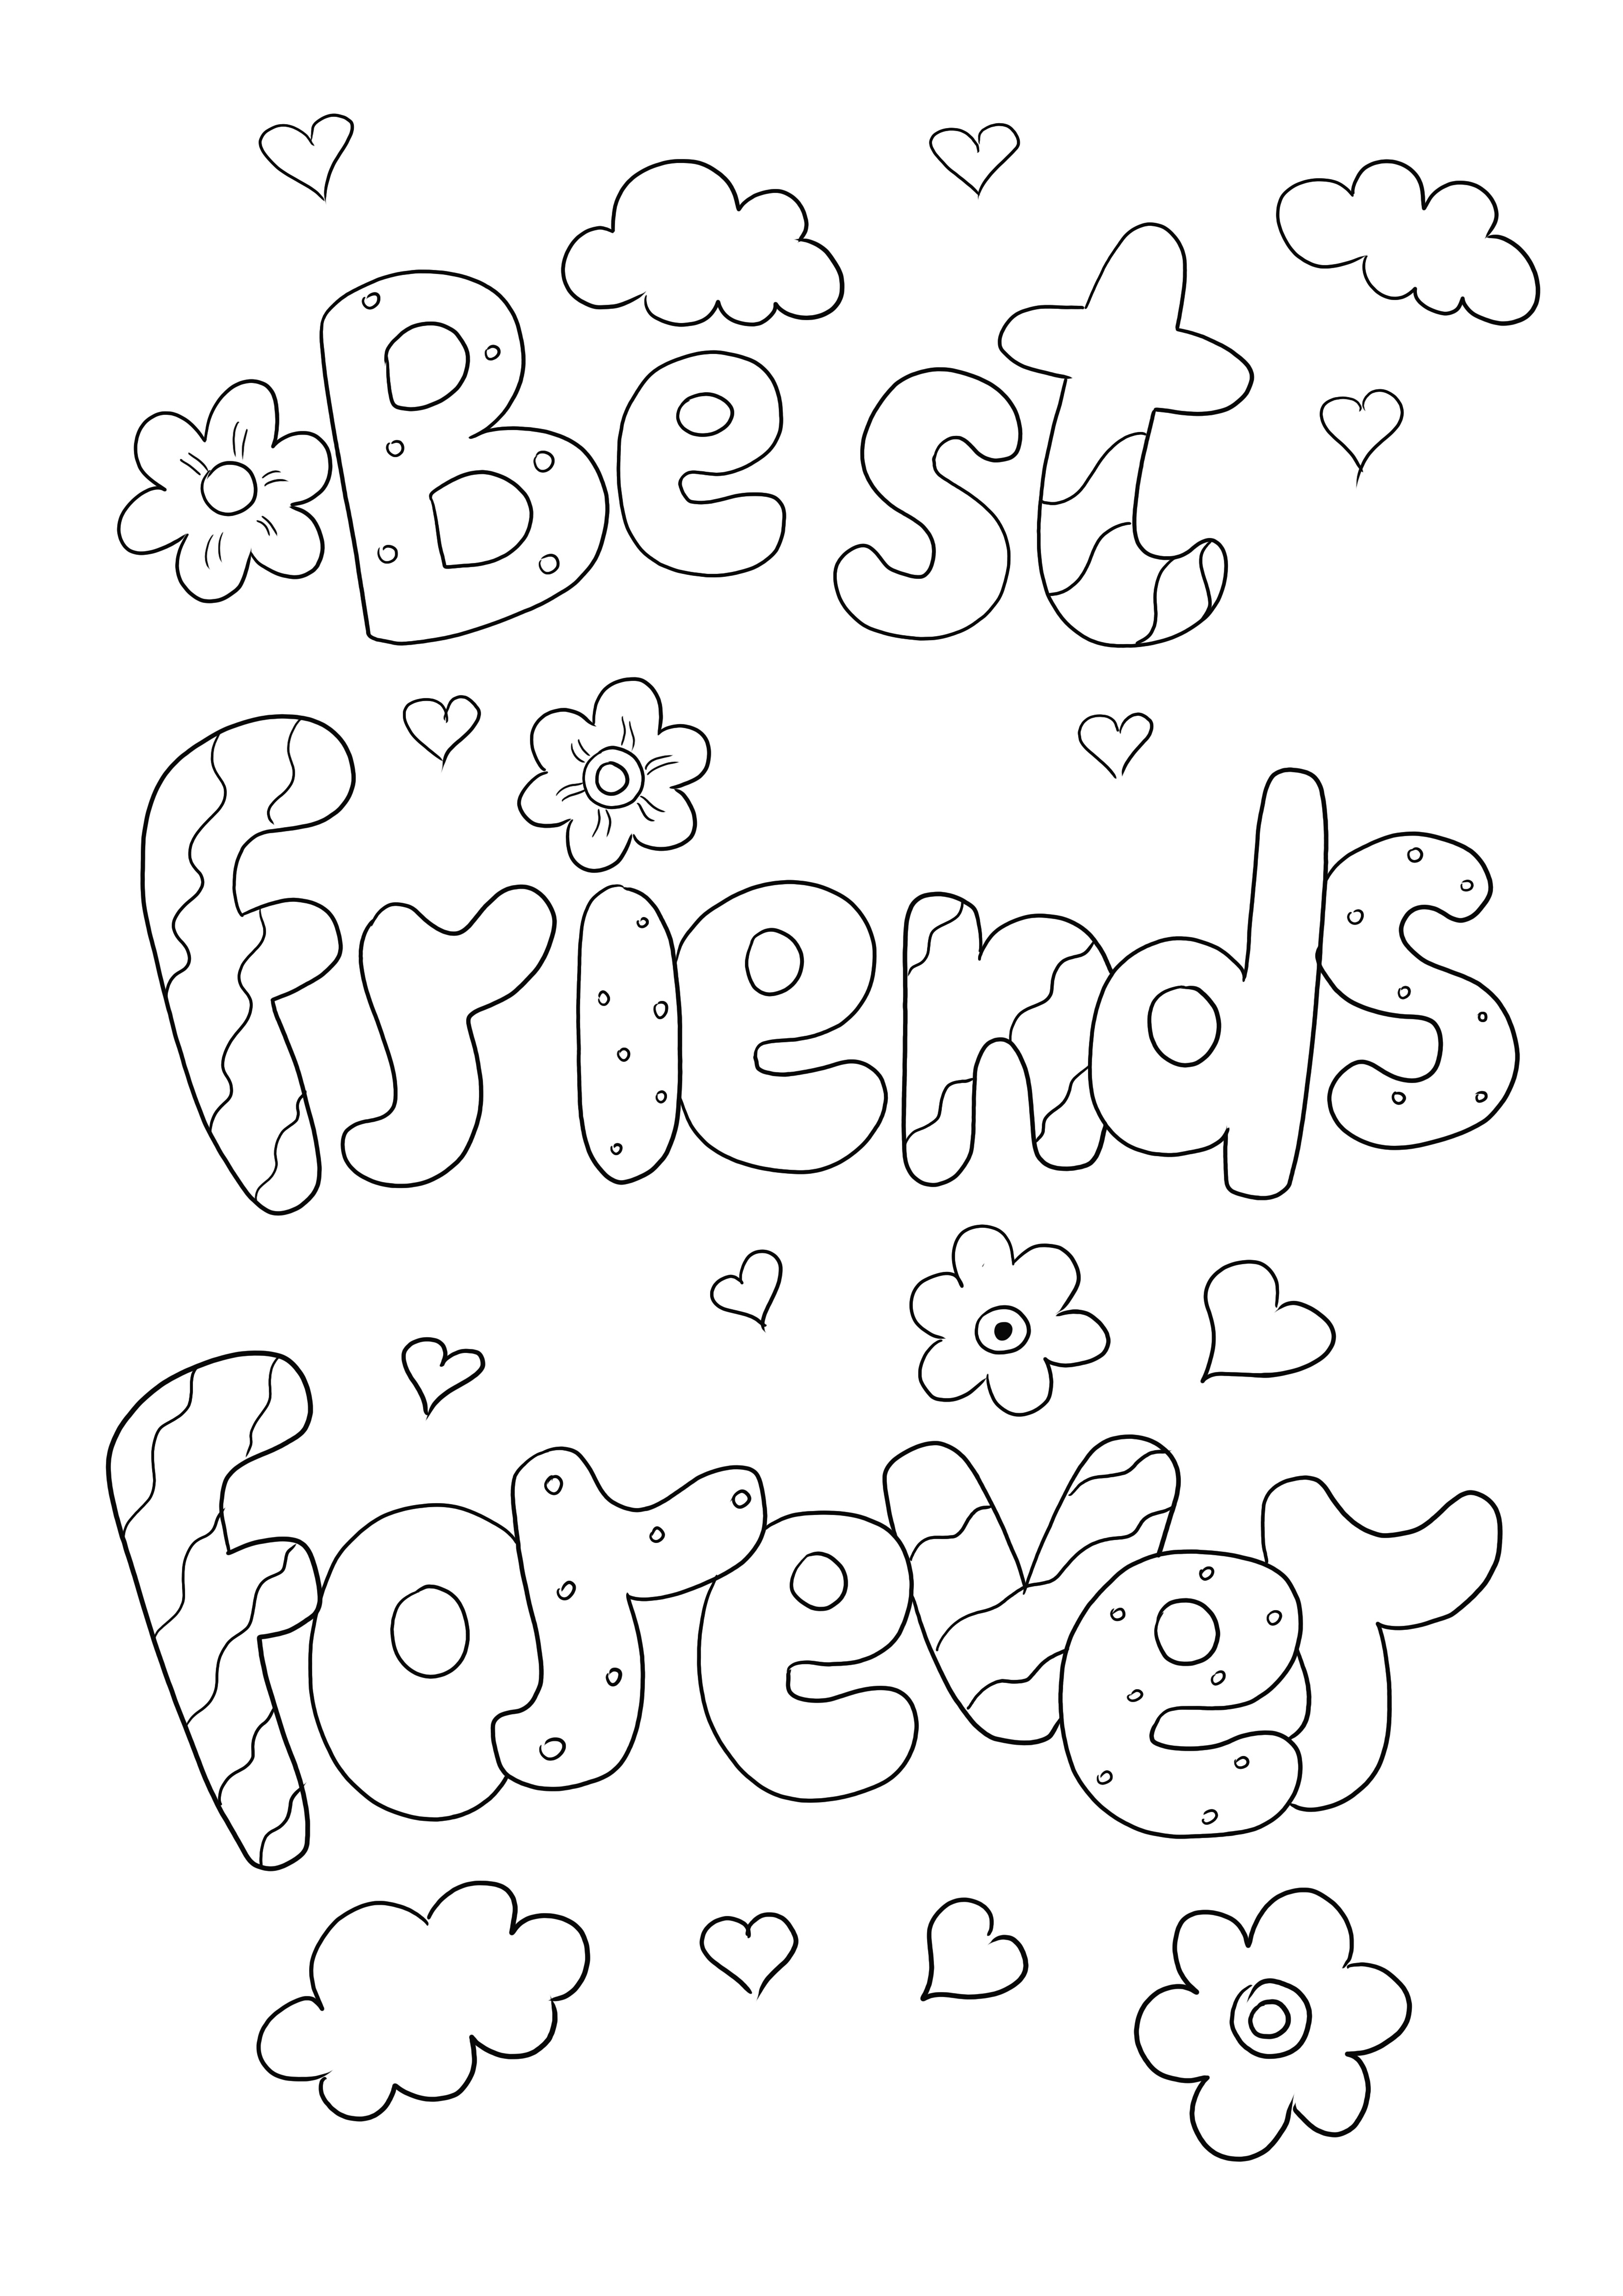 Best Friends Forever boyama resmi indirmek veya doğrudan yazdırmak için ücretsiz